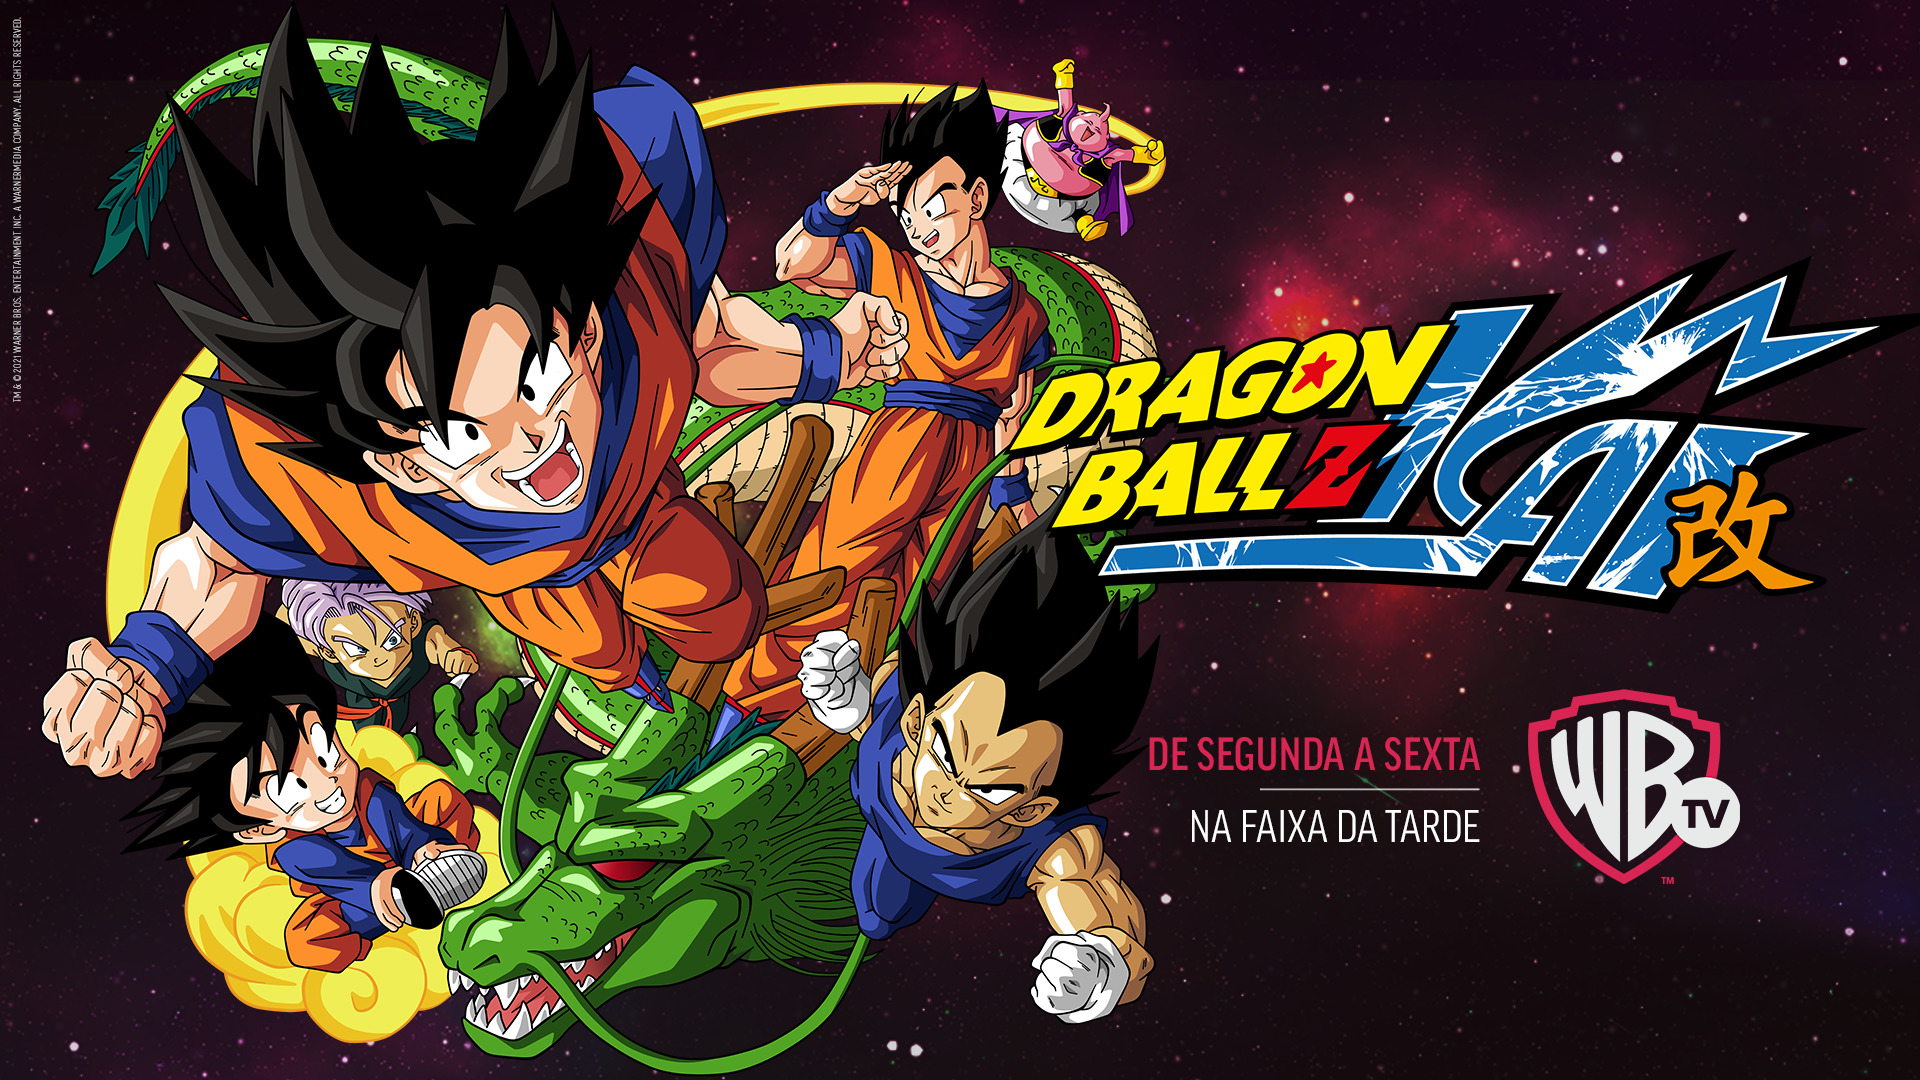  Dragon Ball Z Kai estreia em breve no Globoplay